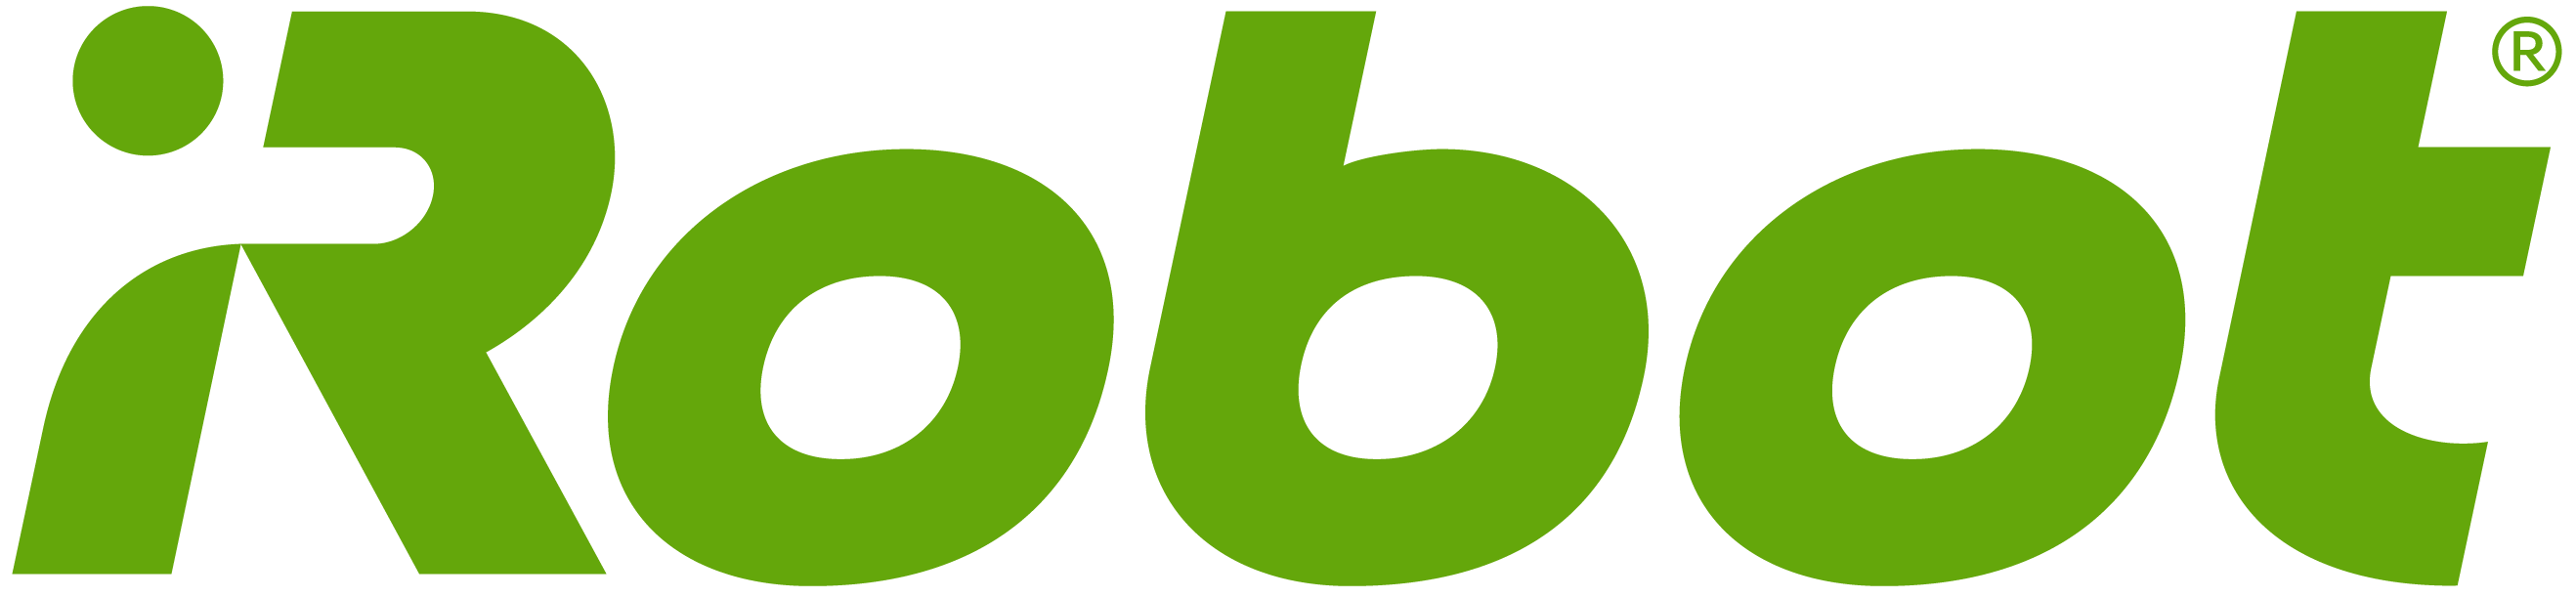 IRobot_Green_logo